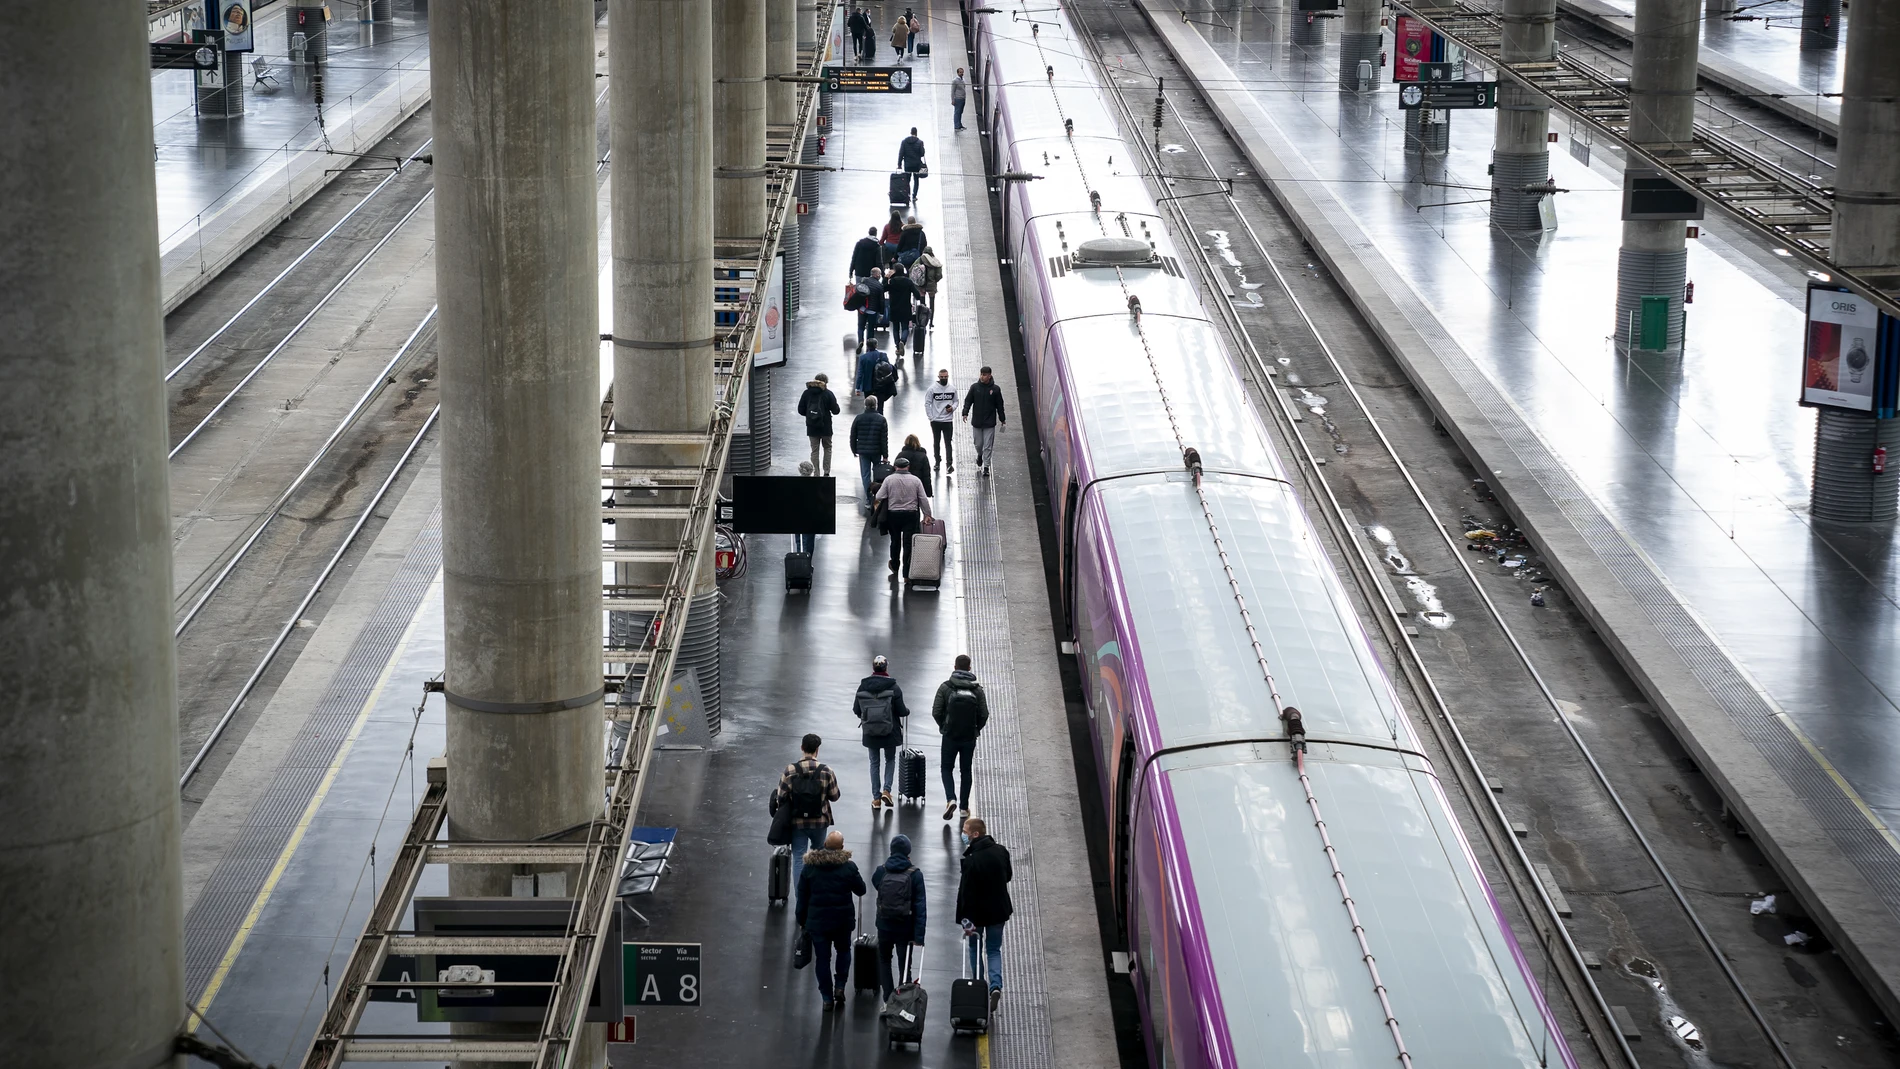 Economía.- Renfe ofrece más de 2,8 millones de plazas para viajar en sus trenes en el 'puente de la Constitución'